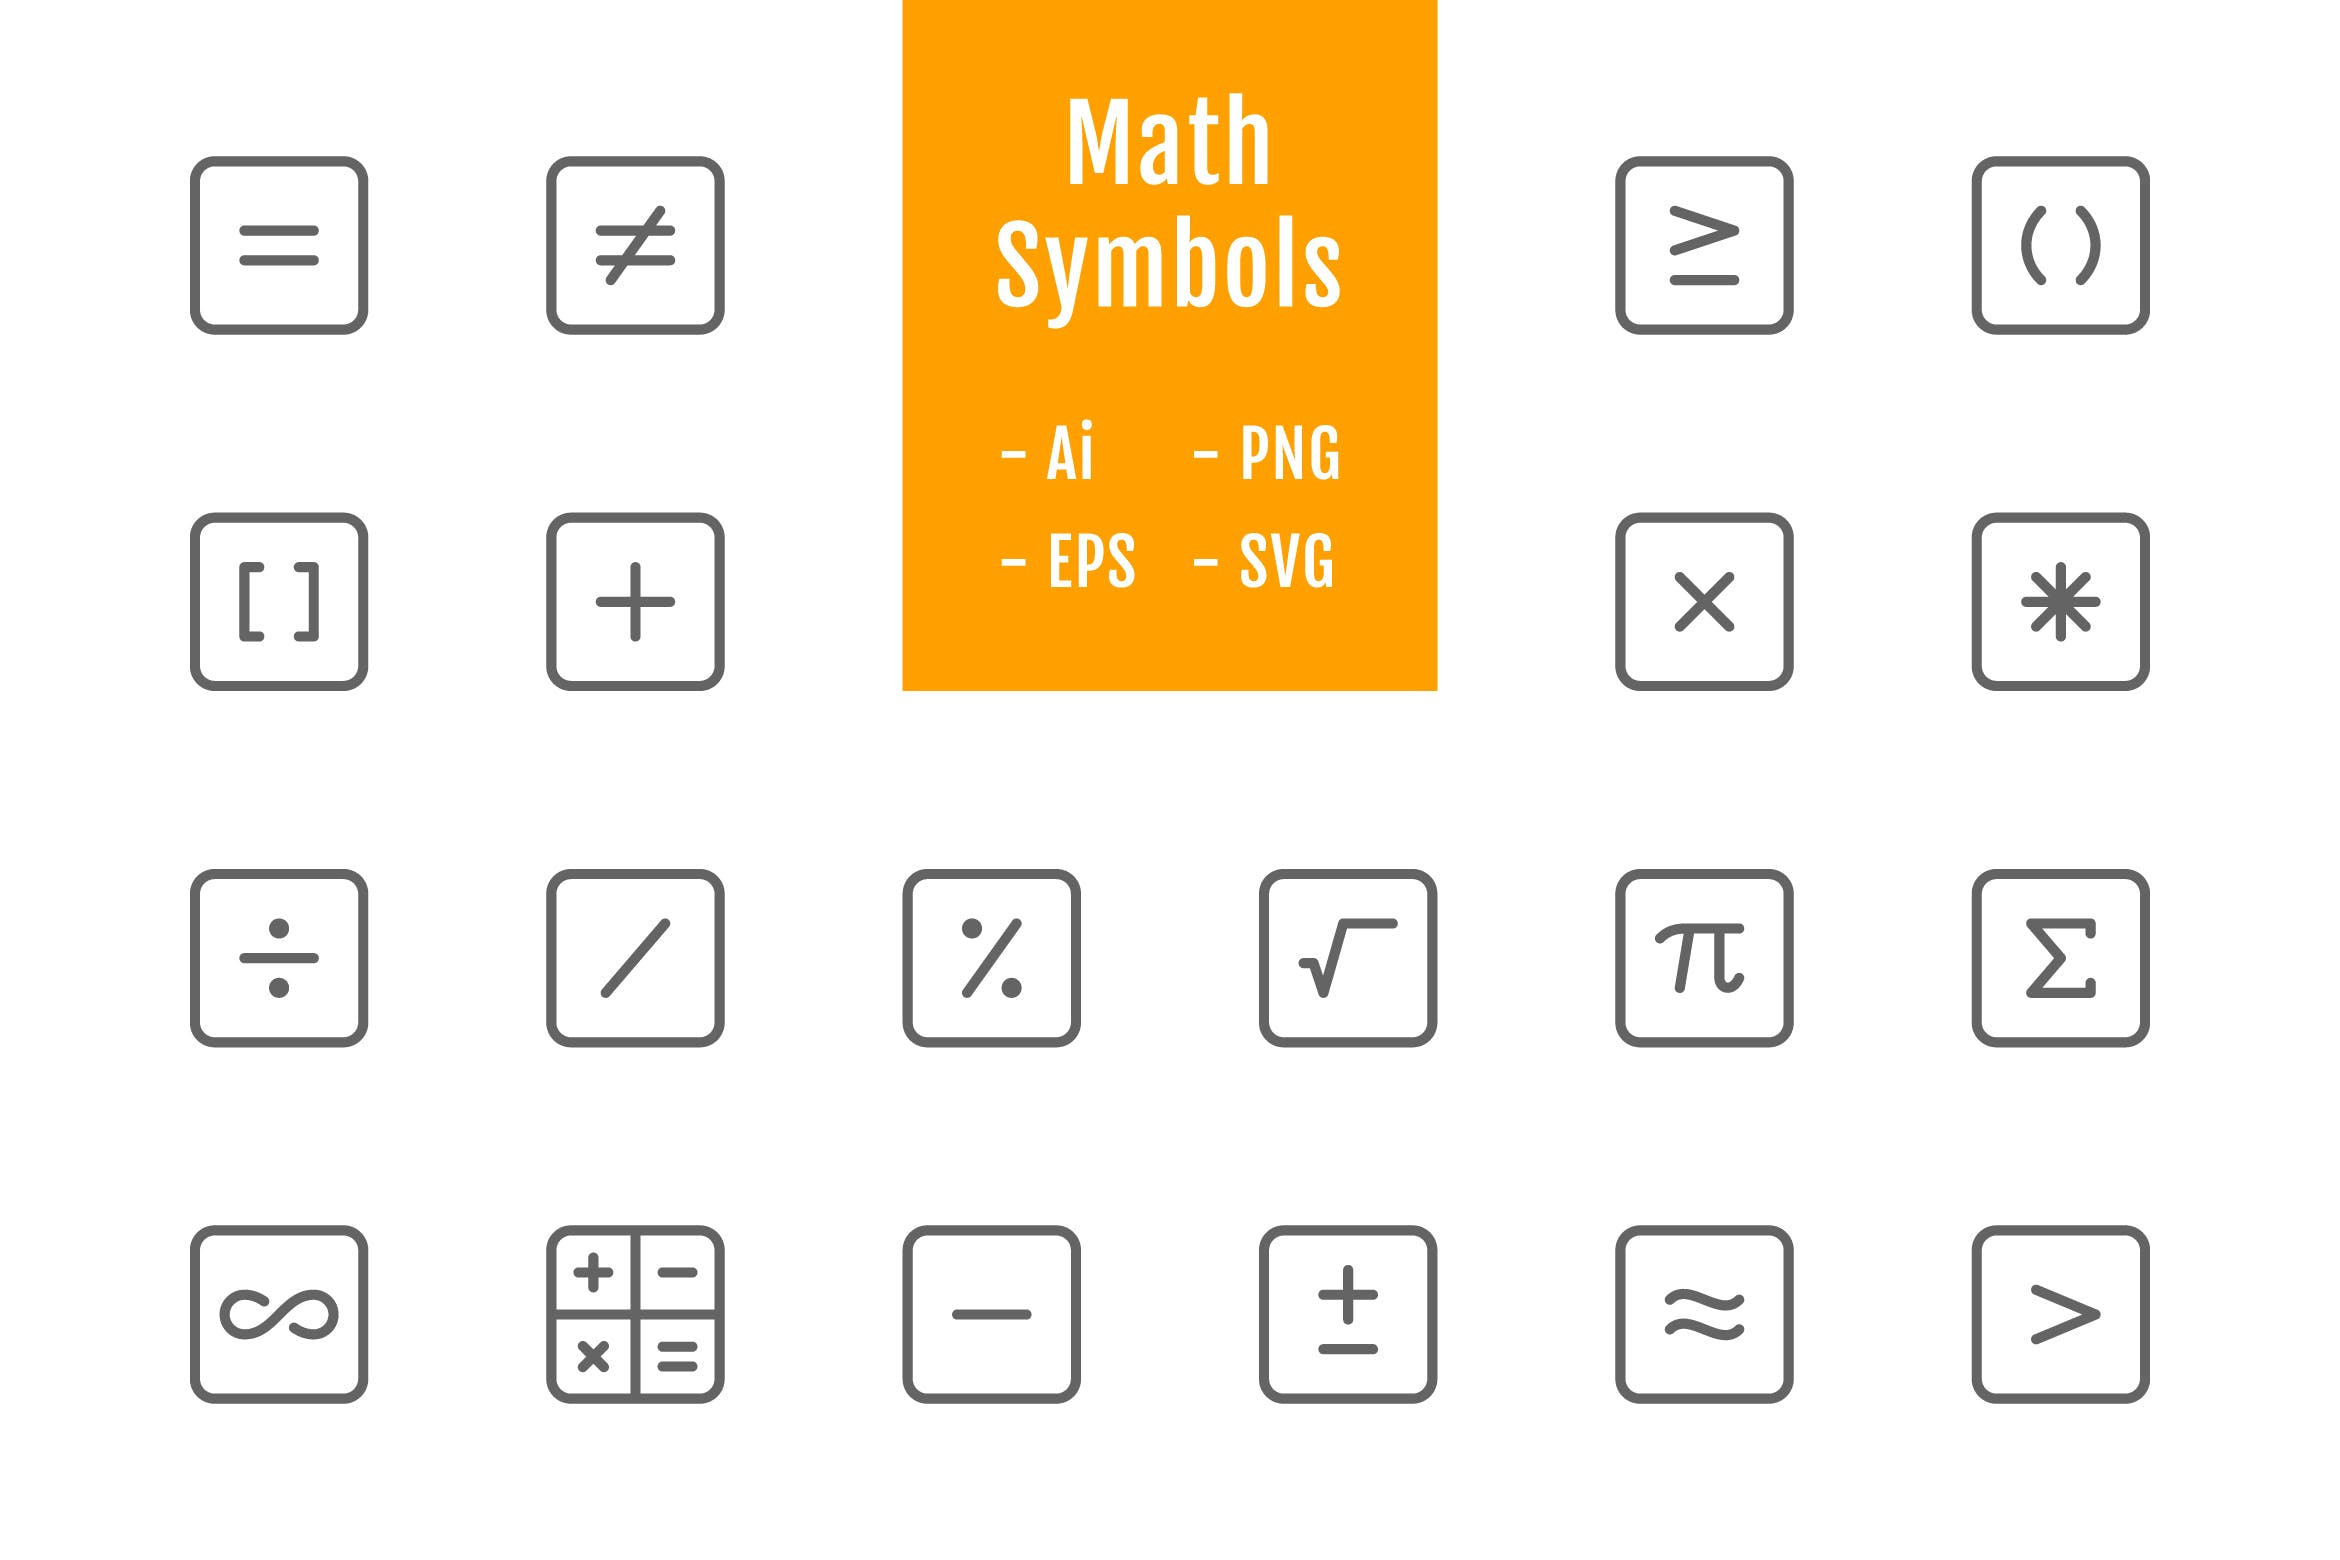 20枚数学符号线条矢量图标设计素材 20 Math Symbols (Line)插图